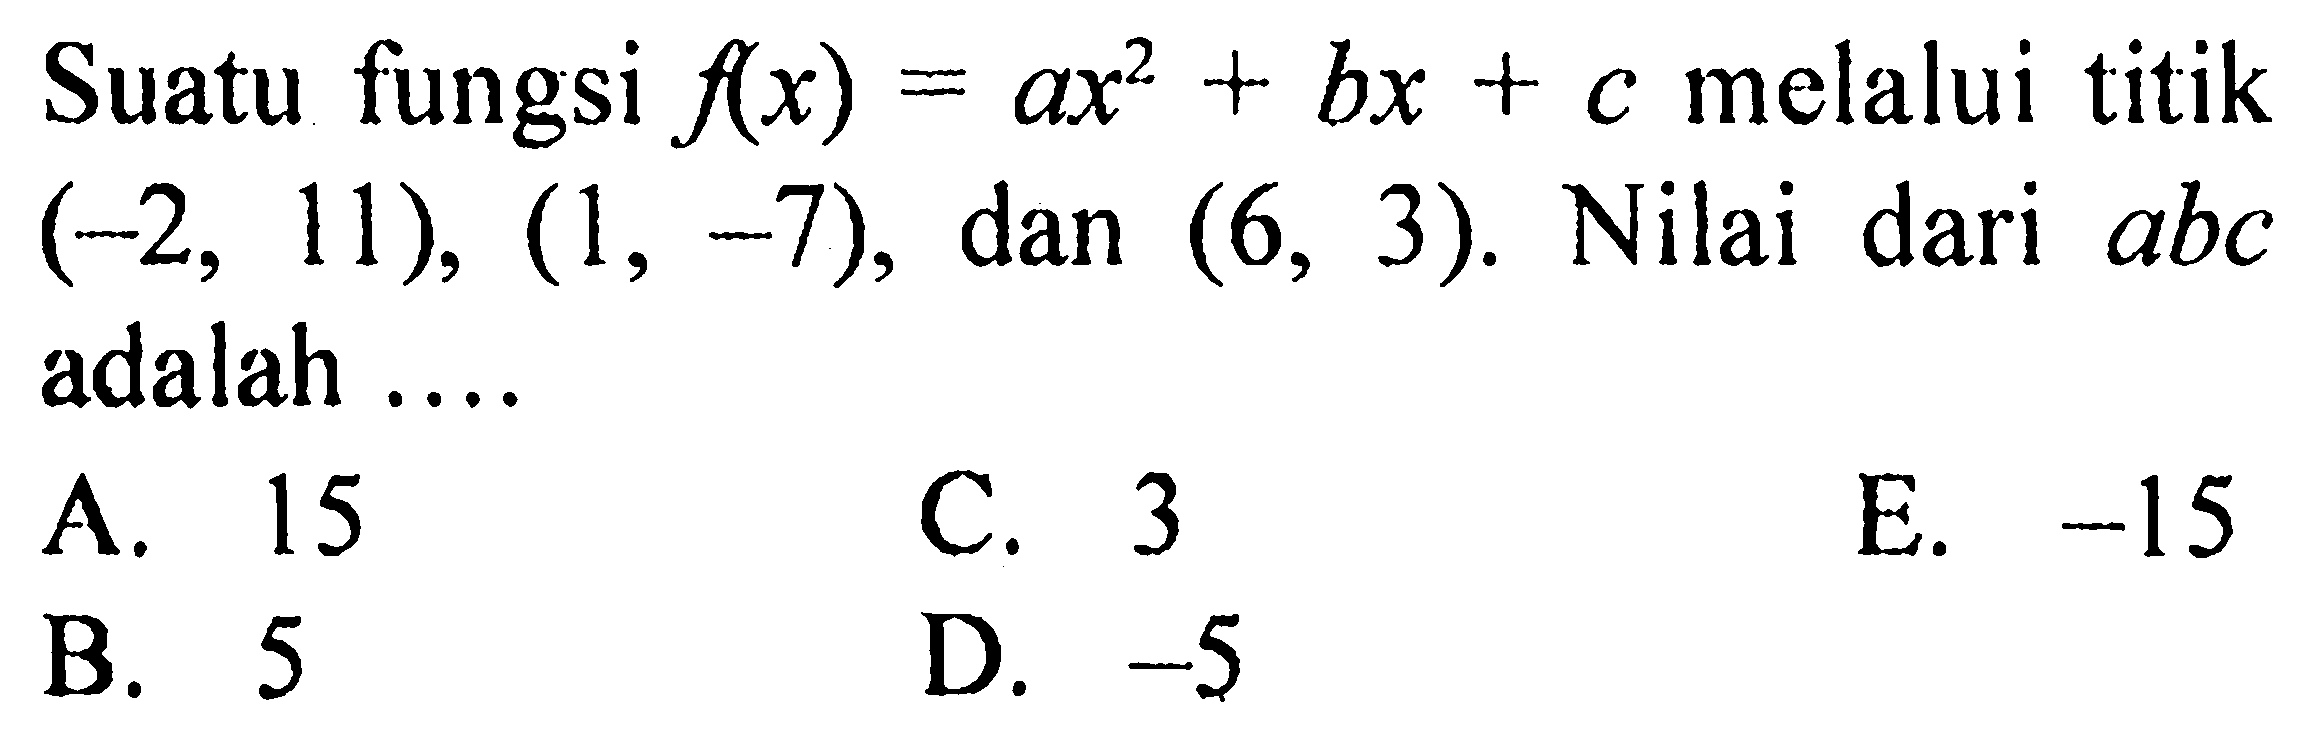 Suatu fungsi  f(x)=ax^2+bx+c  melalui titik  (-2,11),(1,-7) , dan  (6,3) . Nilai dari  abc  adalah ....